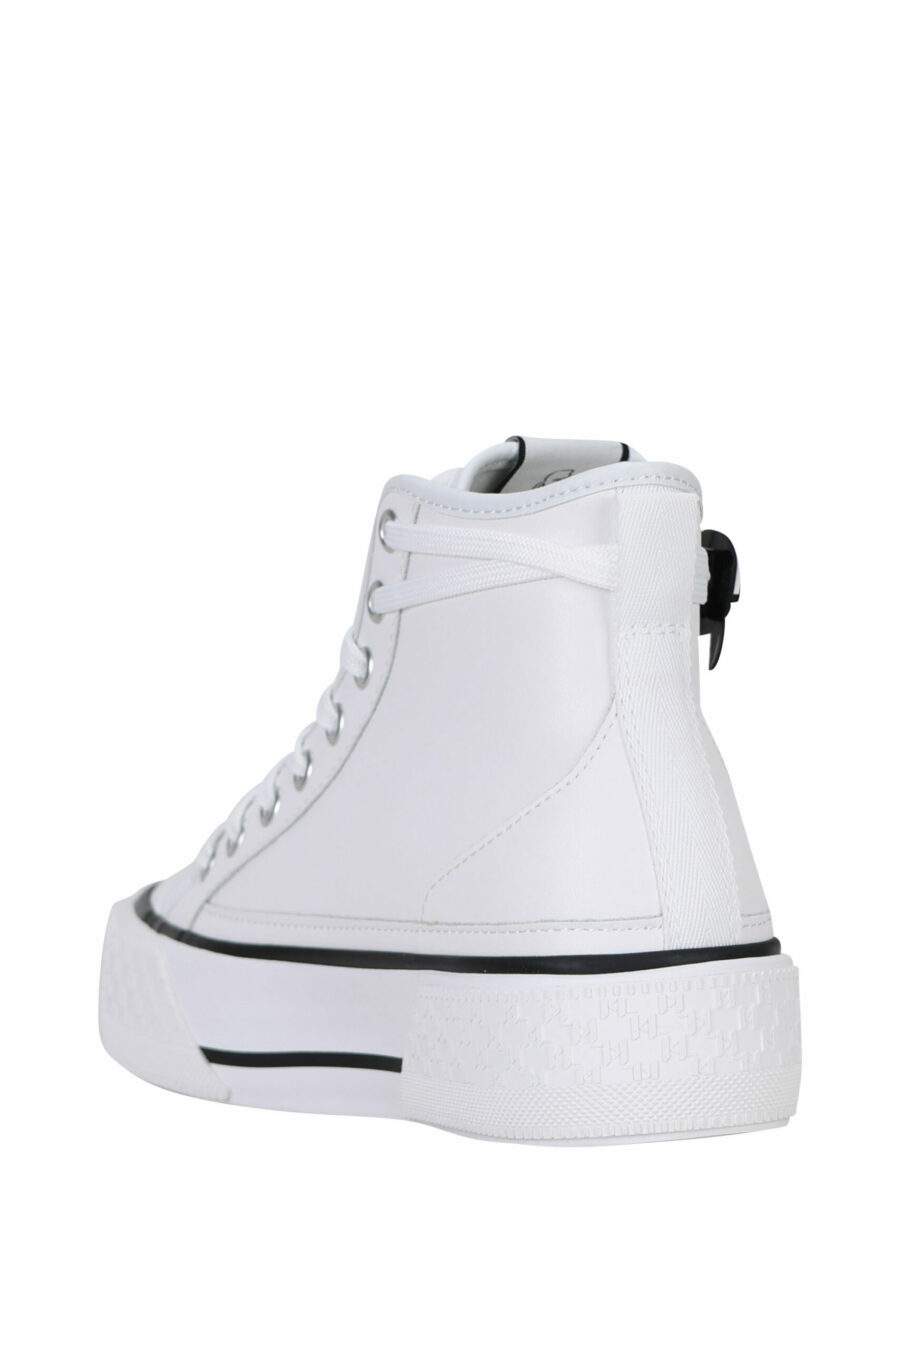 Zapatillas blancas altas de cuero con suela blanca y logo "karl" - 5059529322974 3 scaled